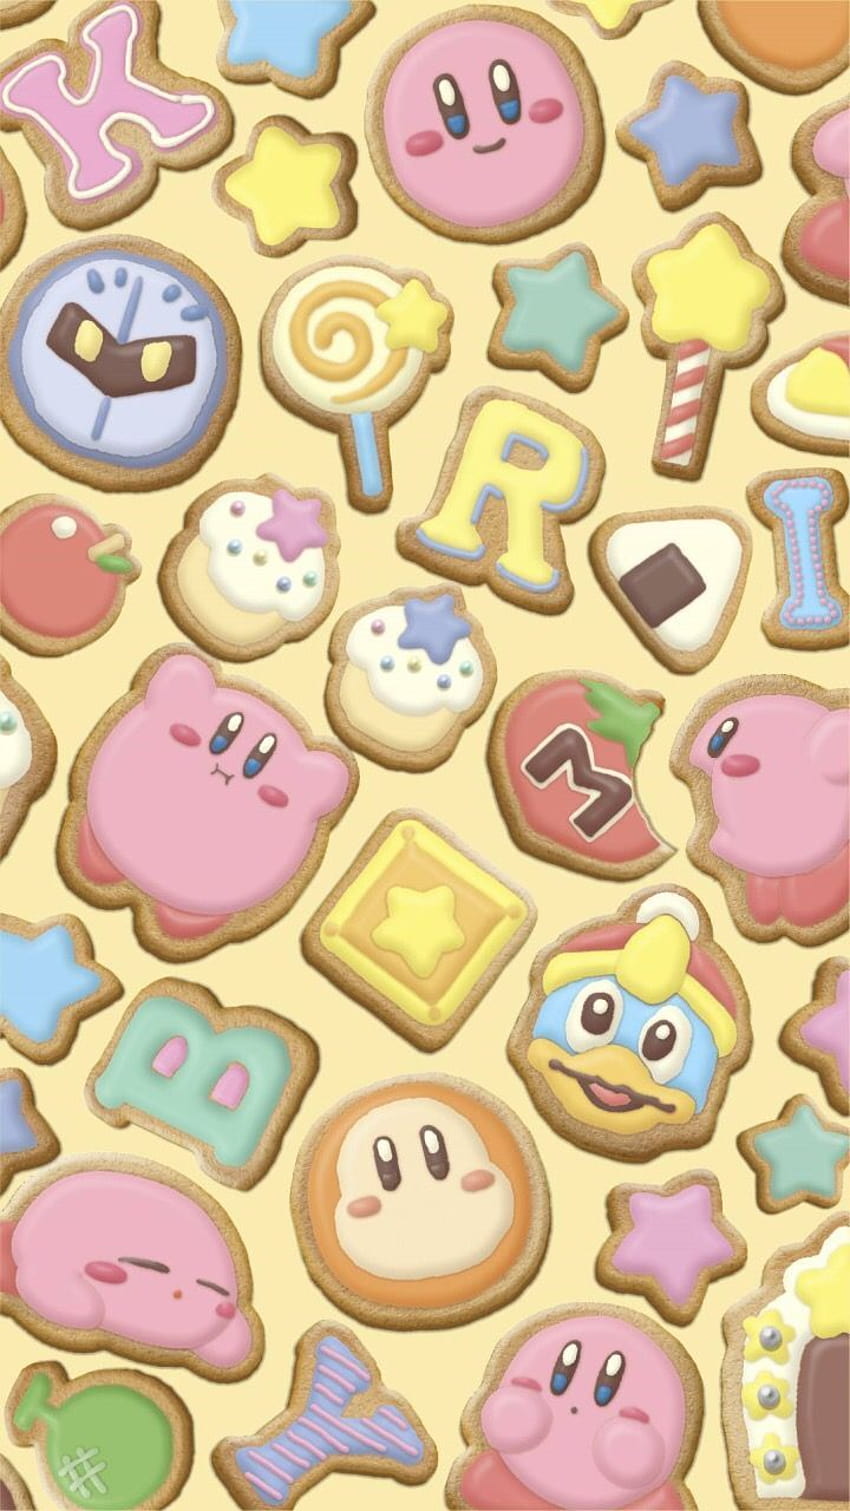 Ponsel LINE Kirby dari Nintendo, game kawaii wallpaper ponsel HD